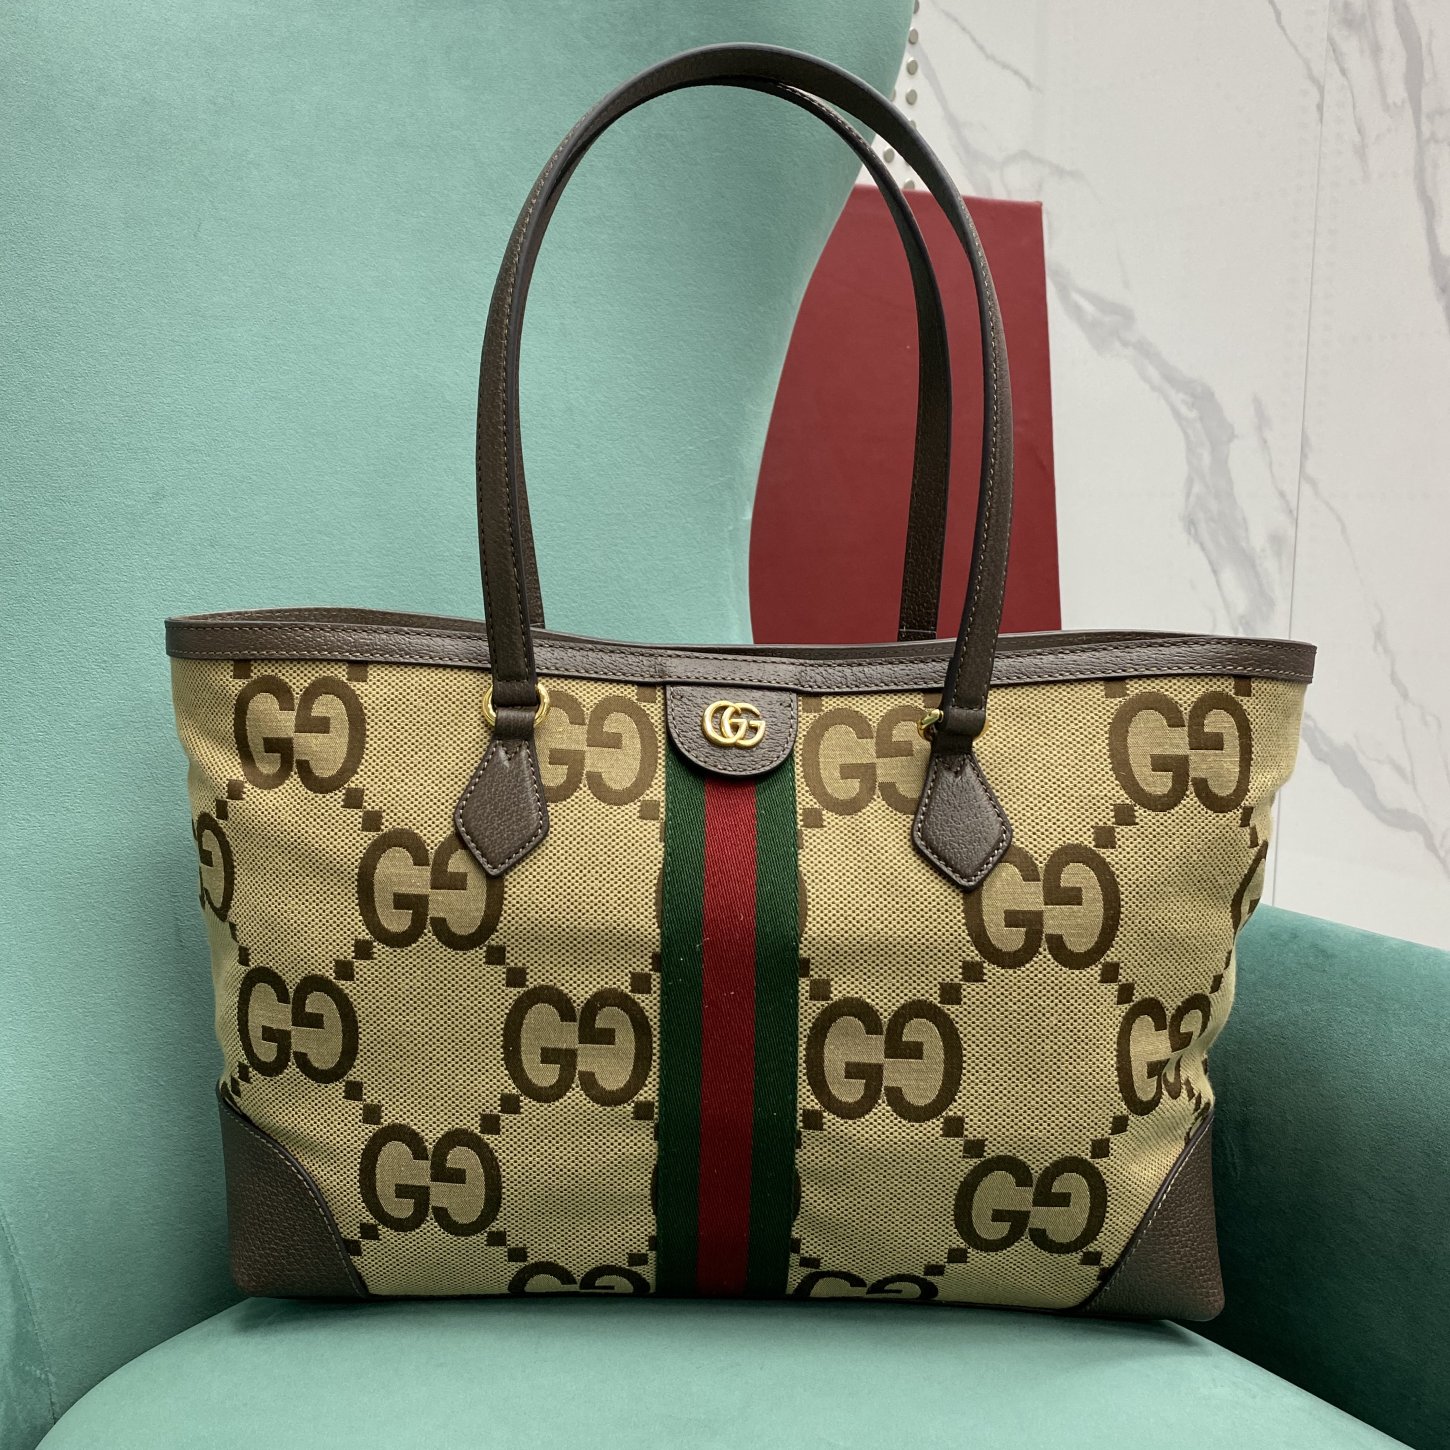 【P1350】Gucci Ophidia系列包包 古奇新色GG提花布单肩托特包购物袋